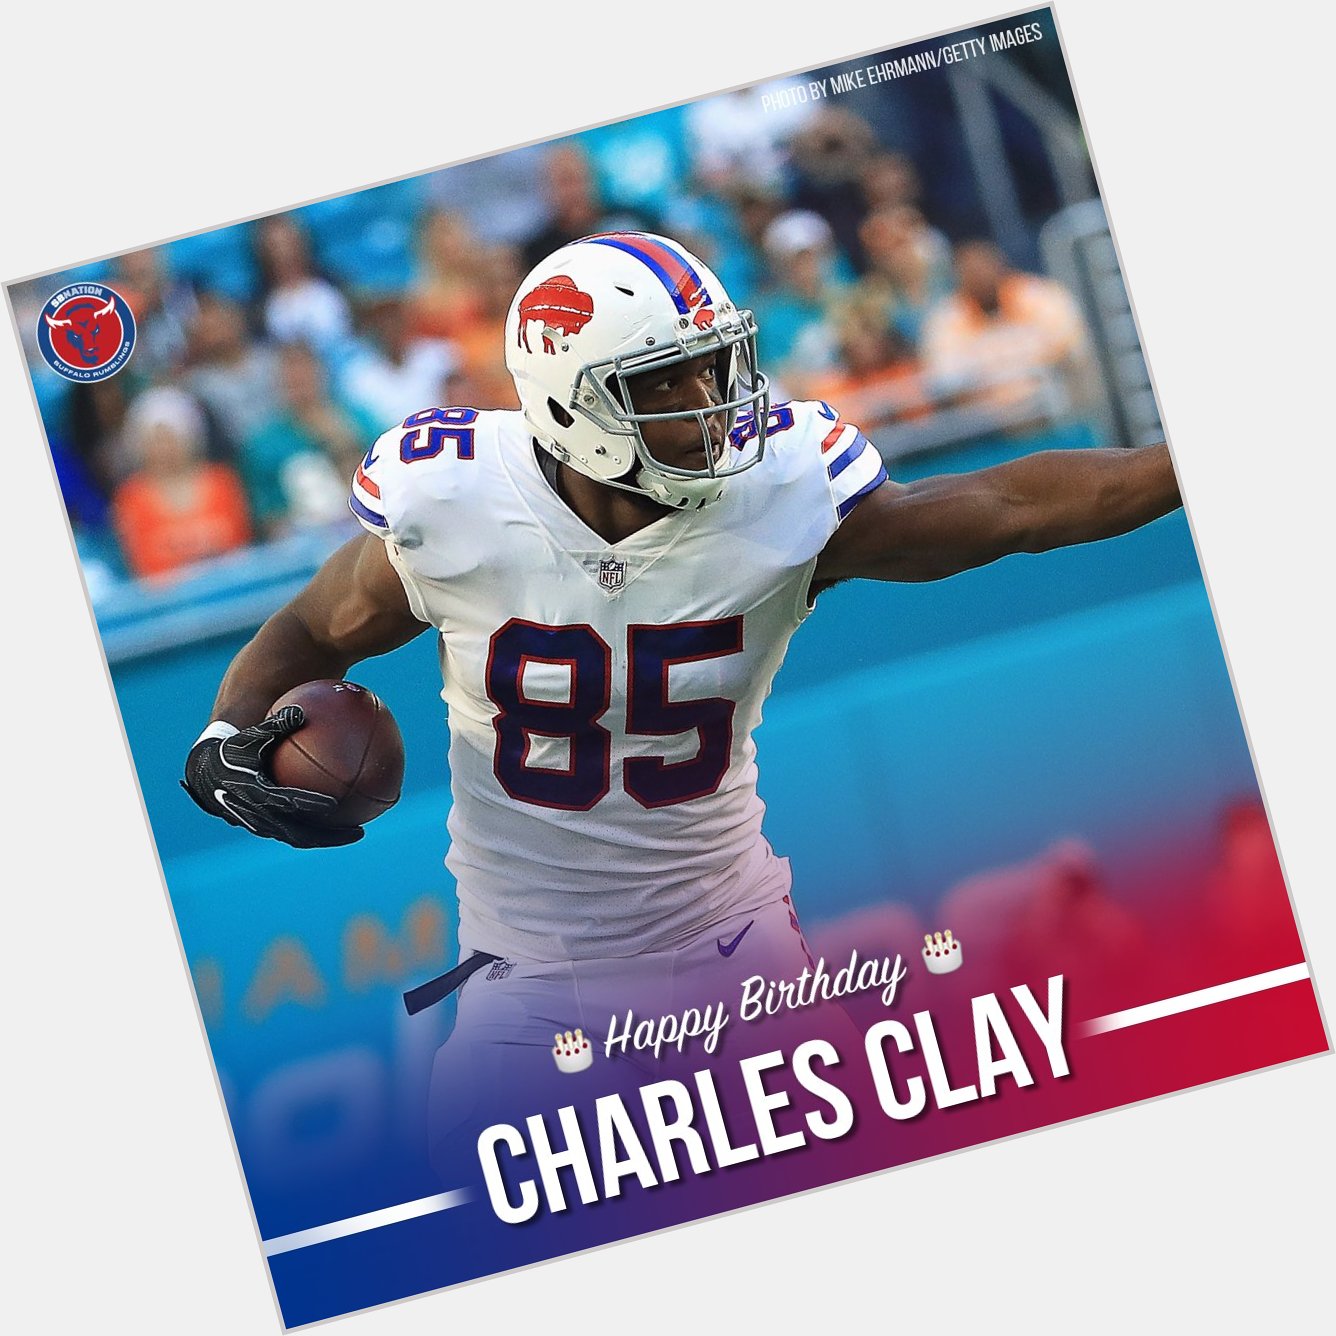 Happy birthday, Charles Clay! 